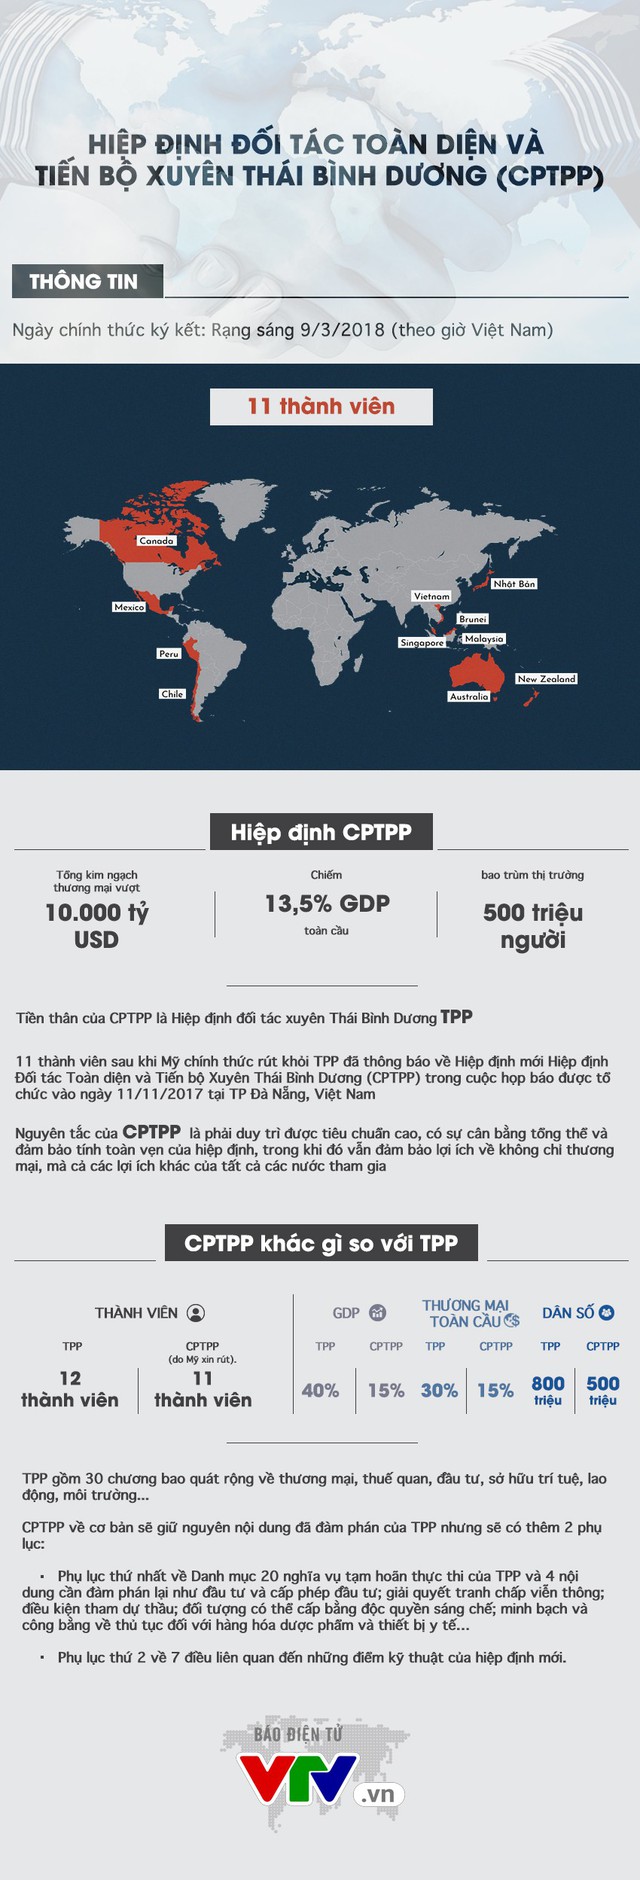 Hiệp định CPTPP là gì và khác như thế nào với hiệp định TPP? - Ảnh 1.